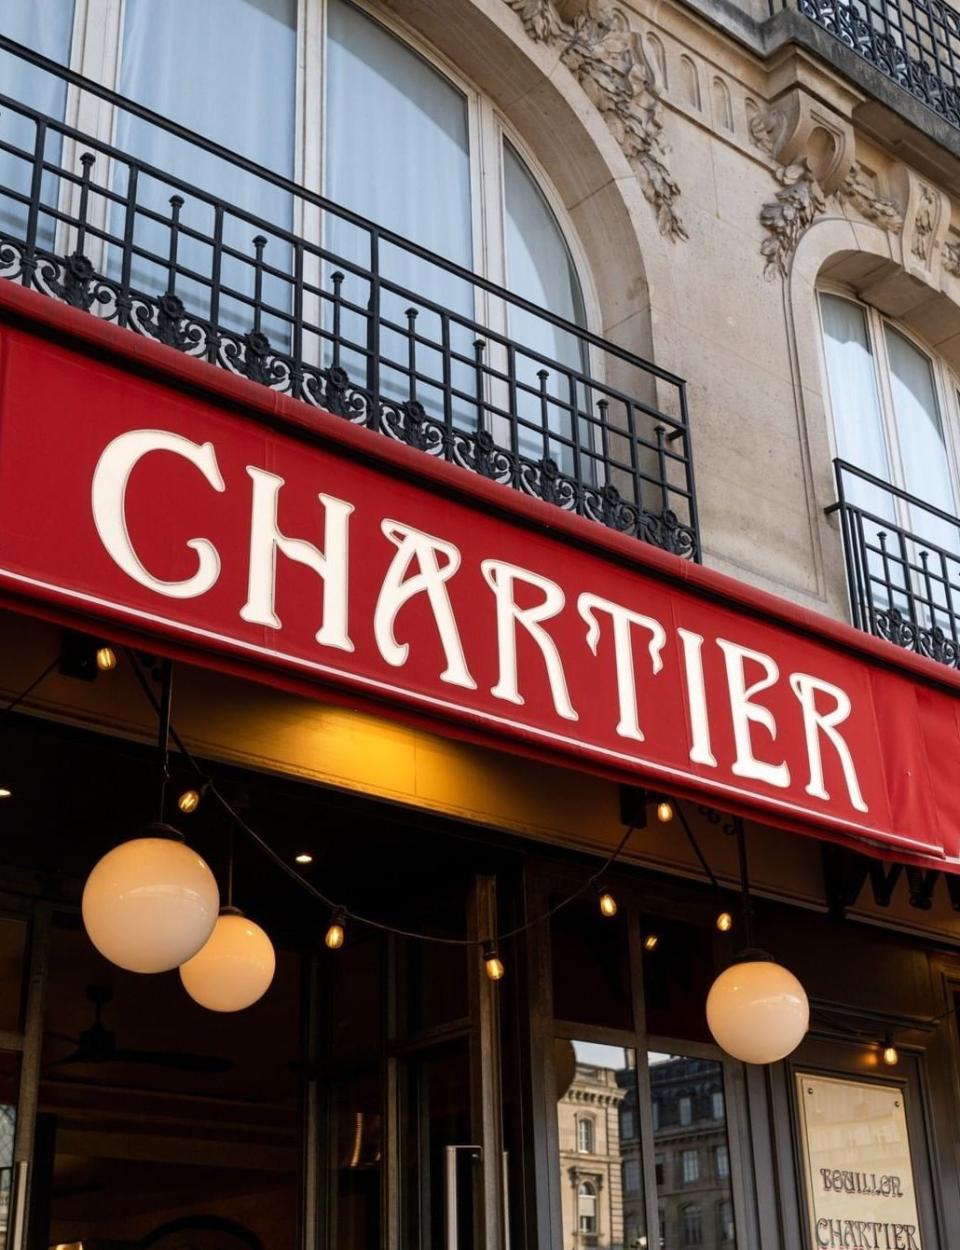 Chez Bouillon Chartier